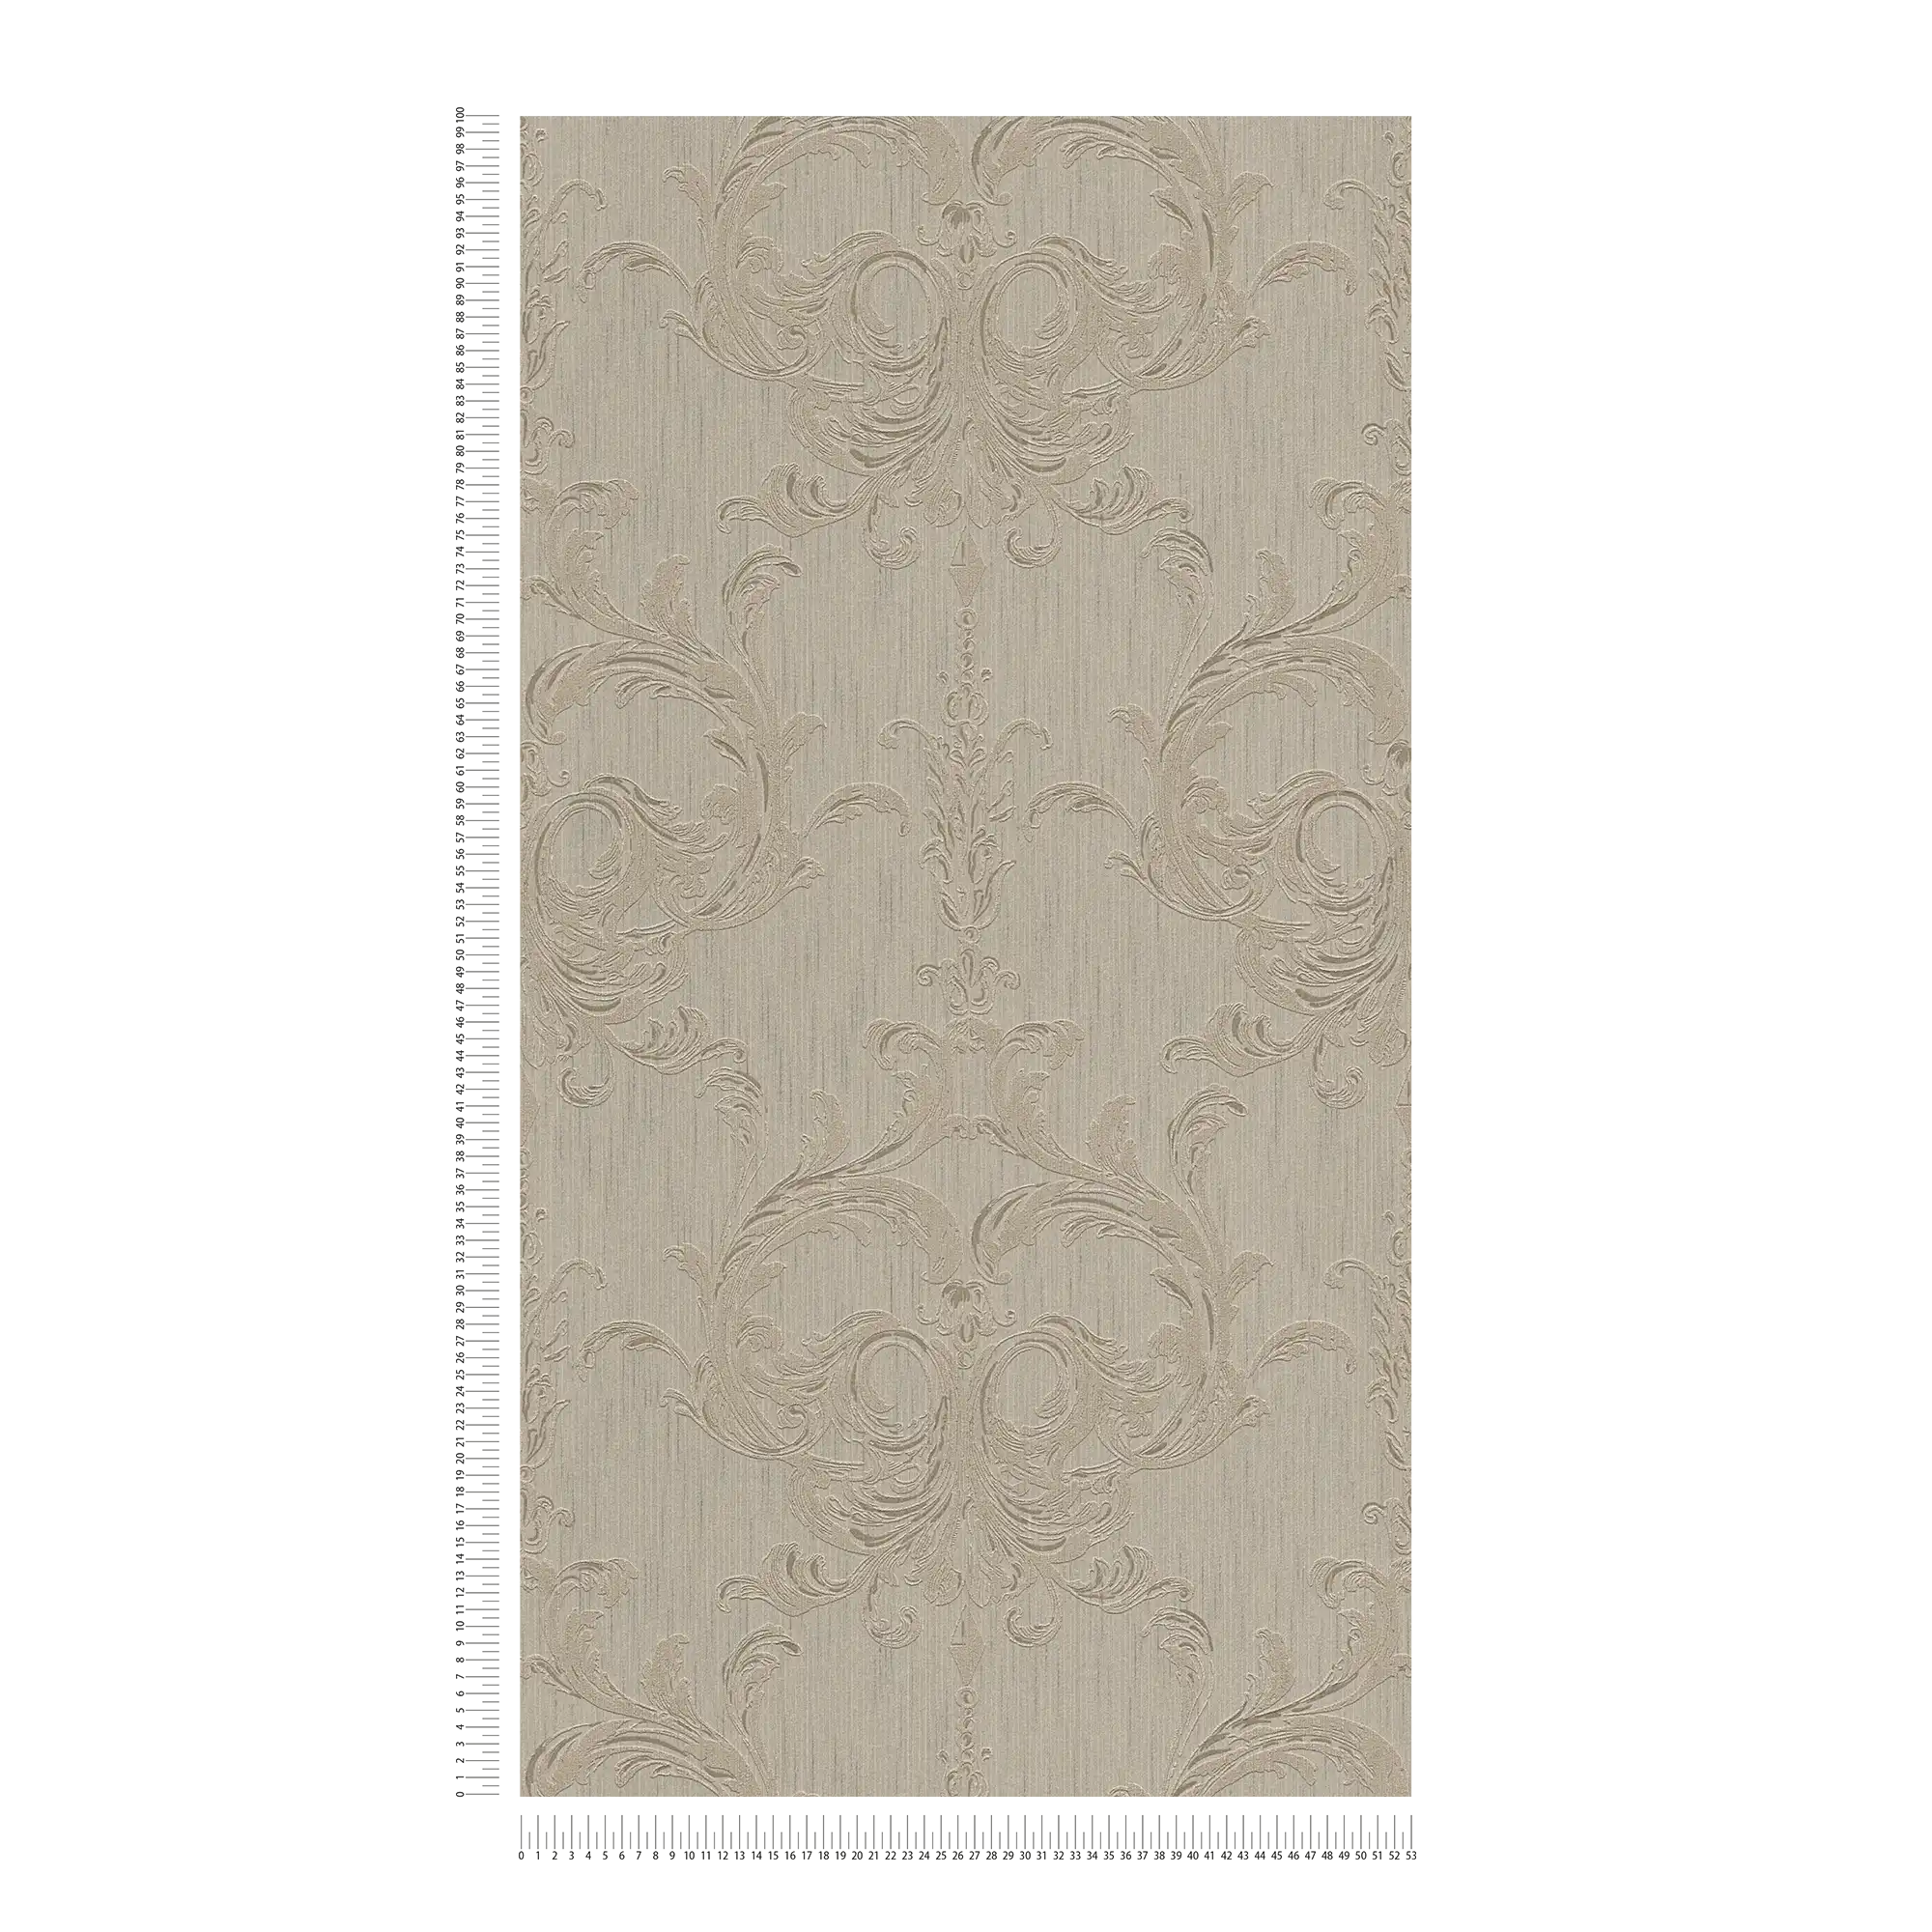             Elegant behangpapier met filigraan ornament ontwerp - bruin
        